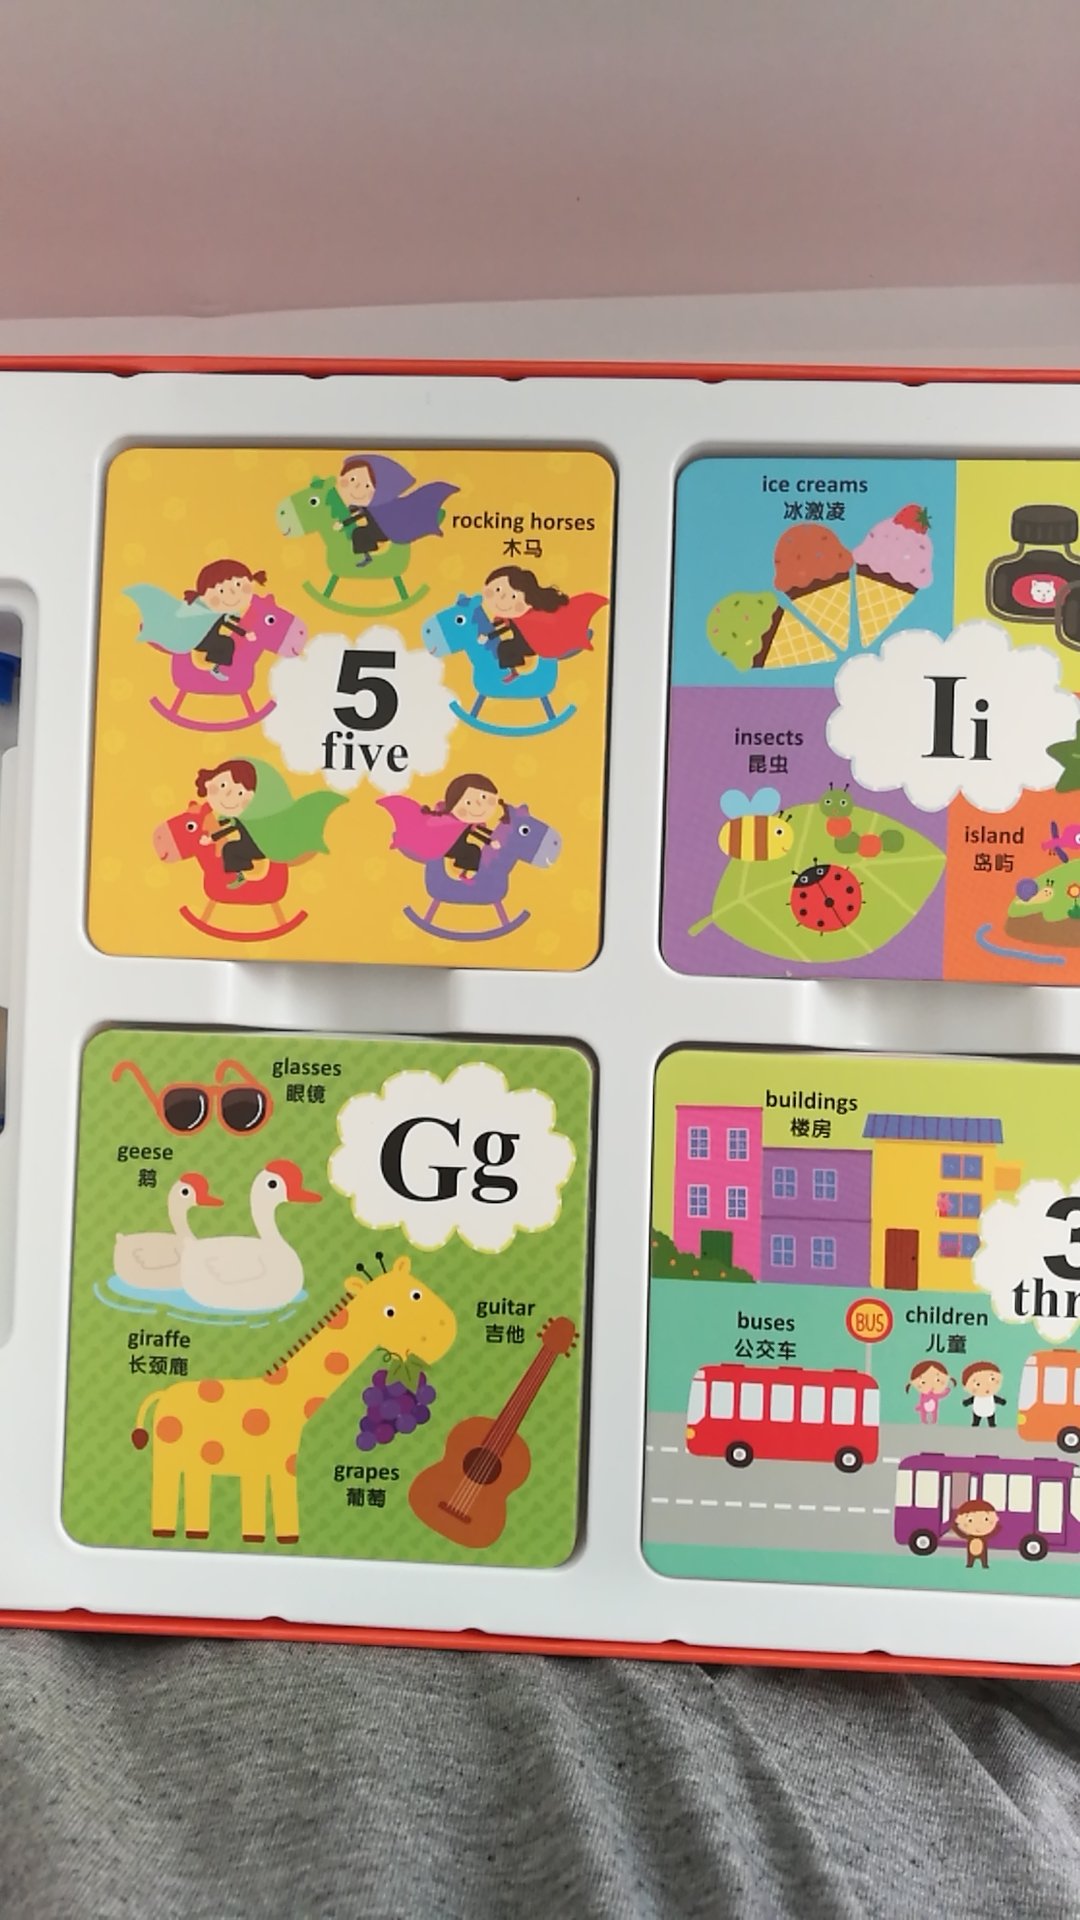 游戏很好，可以锻炼孩子的观察能力。并且这套卡片可以当做英文学习卡片，孩子正在学自然拼读，这个卡片刚好可以配合练习，值得购买